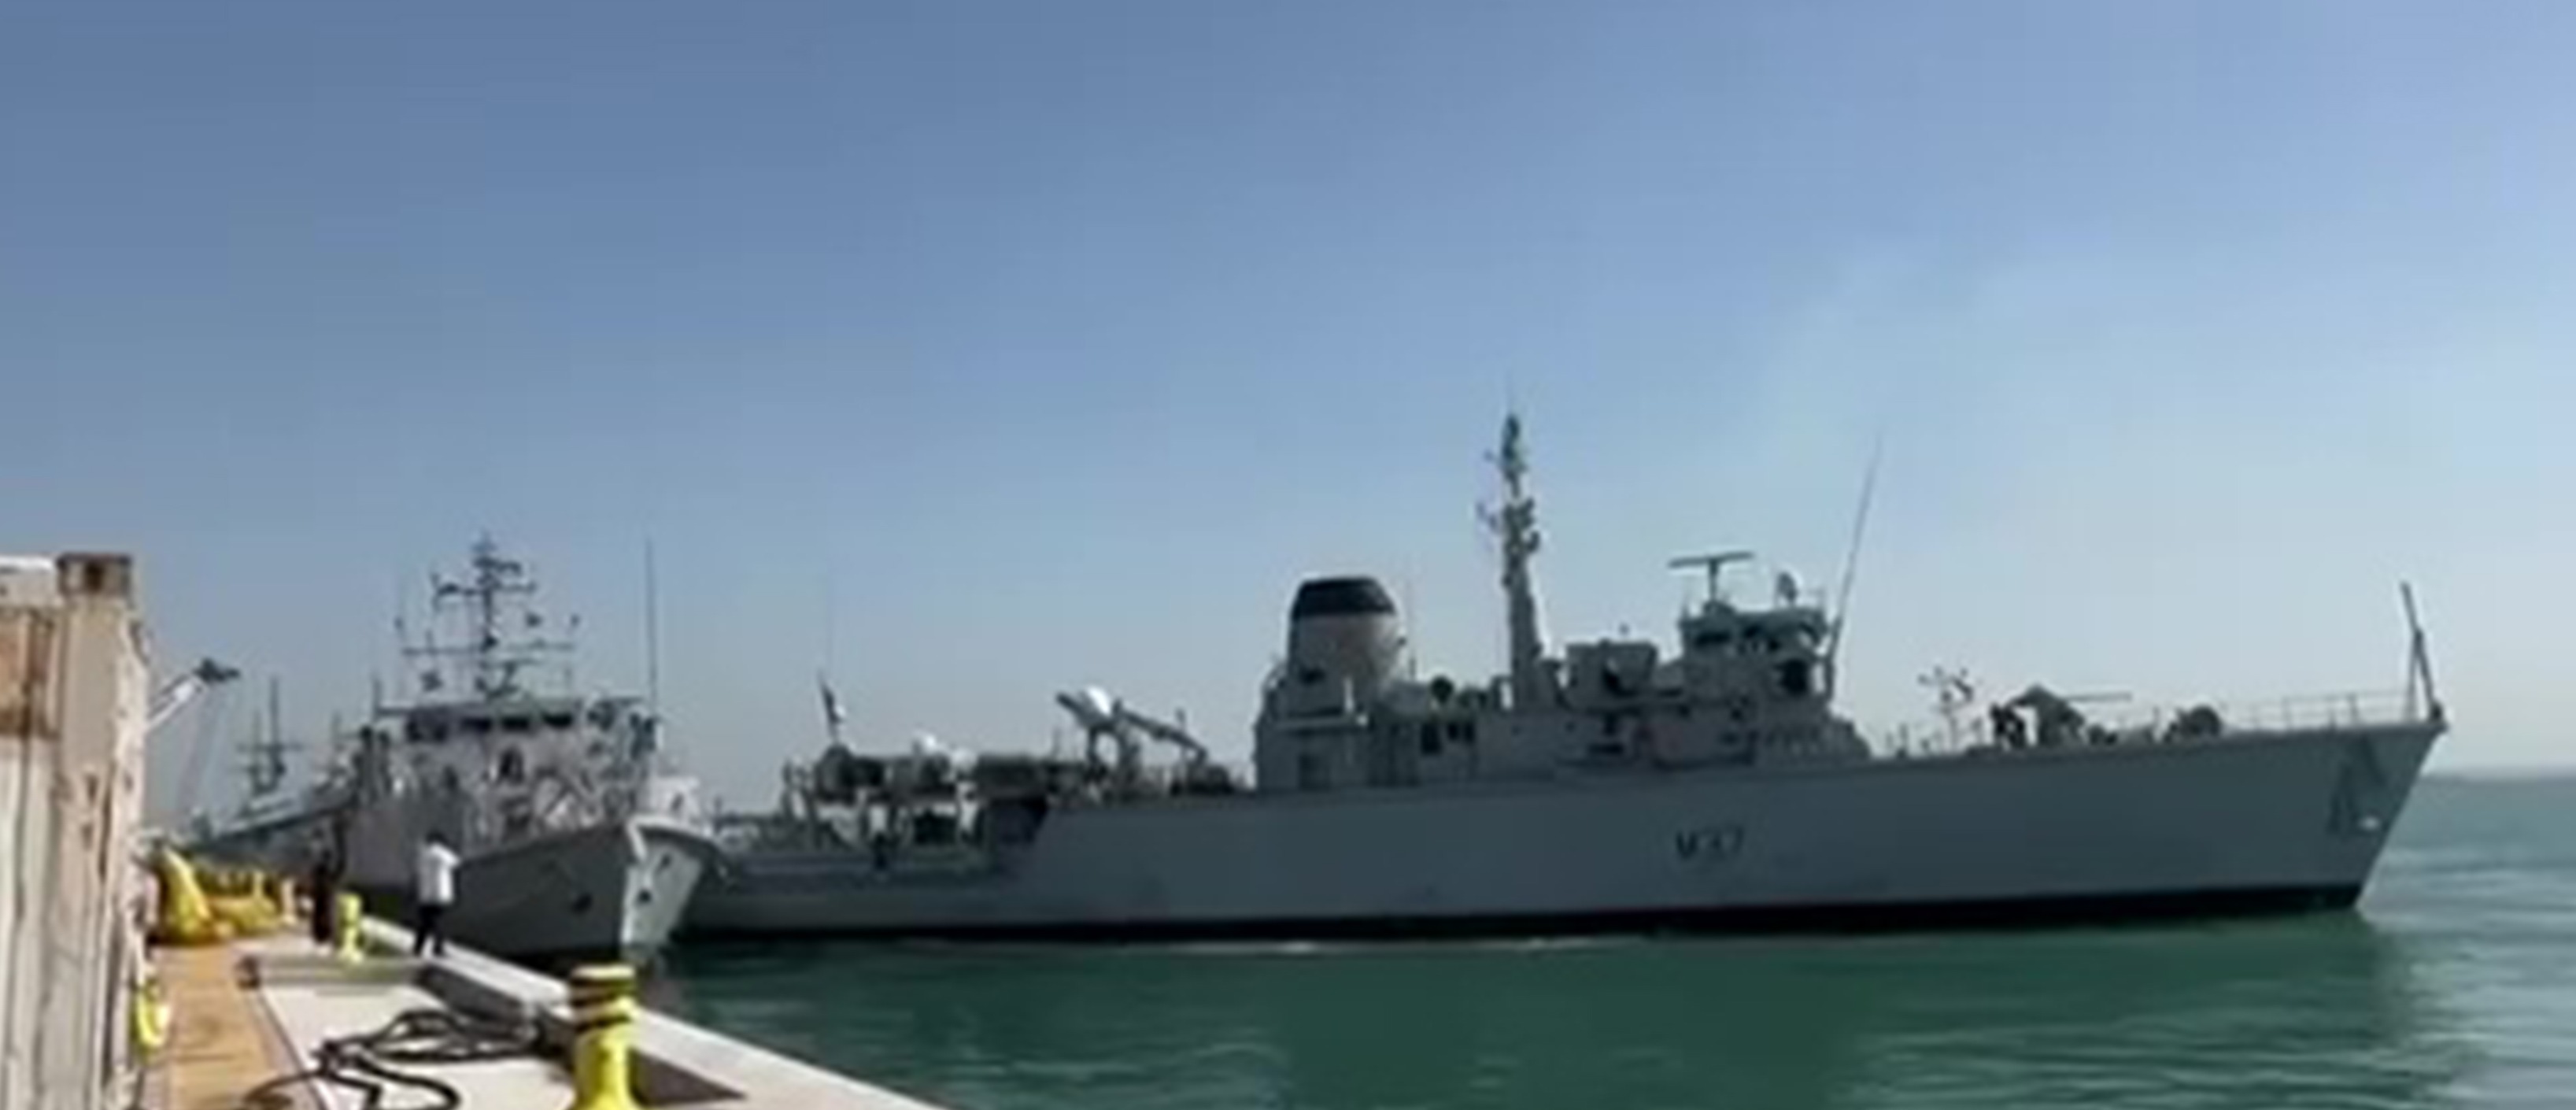 Die Kollision ereignete sich vor der Küste Bahrains, als die Schiffe in den Hafen zurückhumpelten